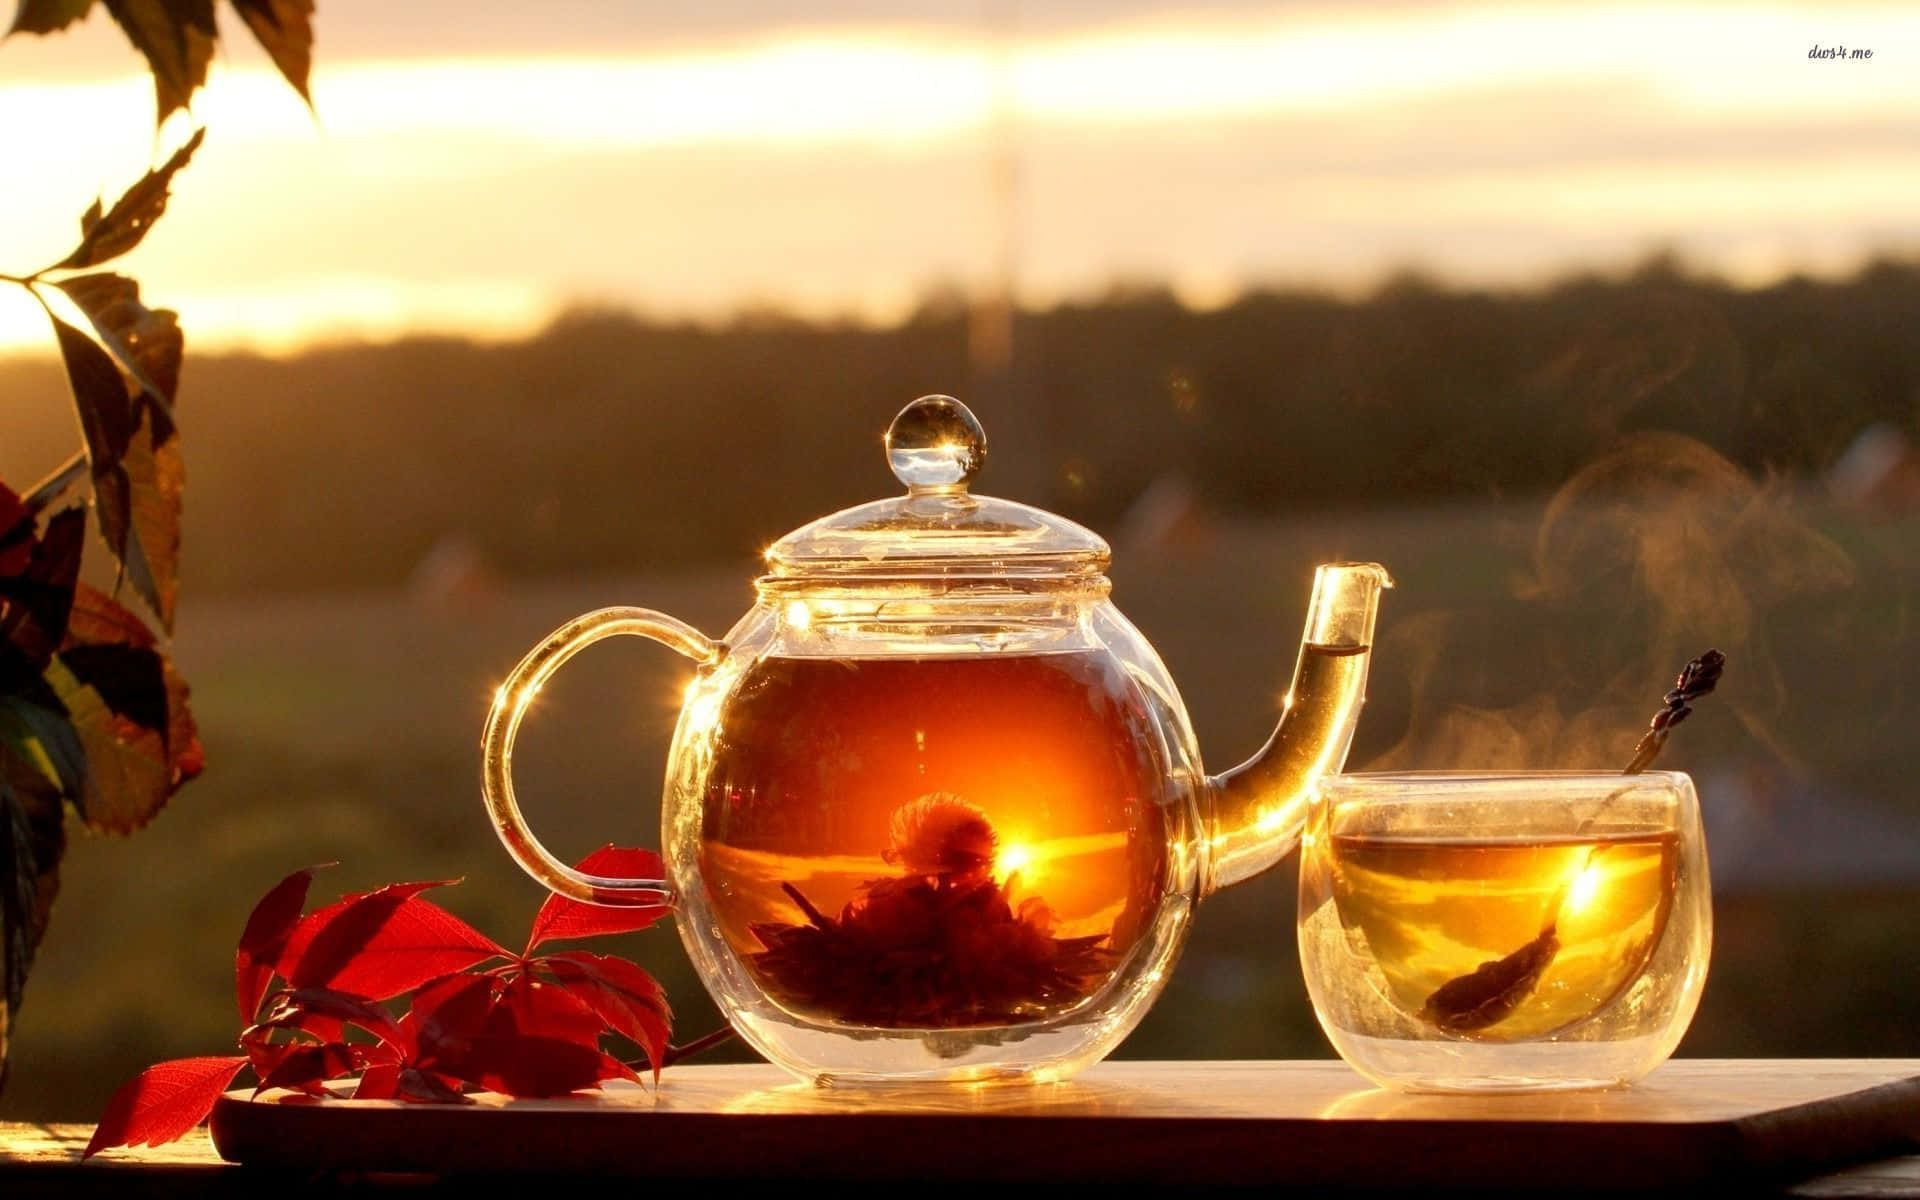 Tea Pot And Teacups On A Table In The Sun